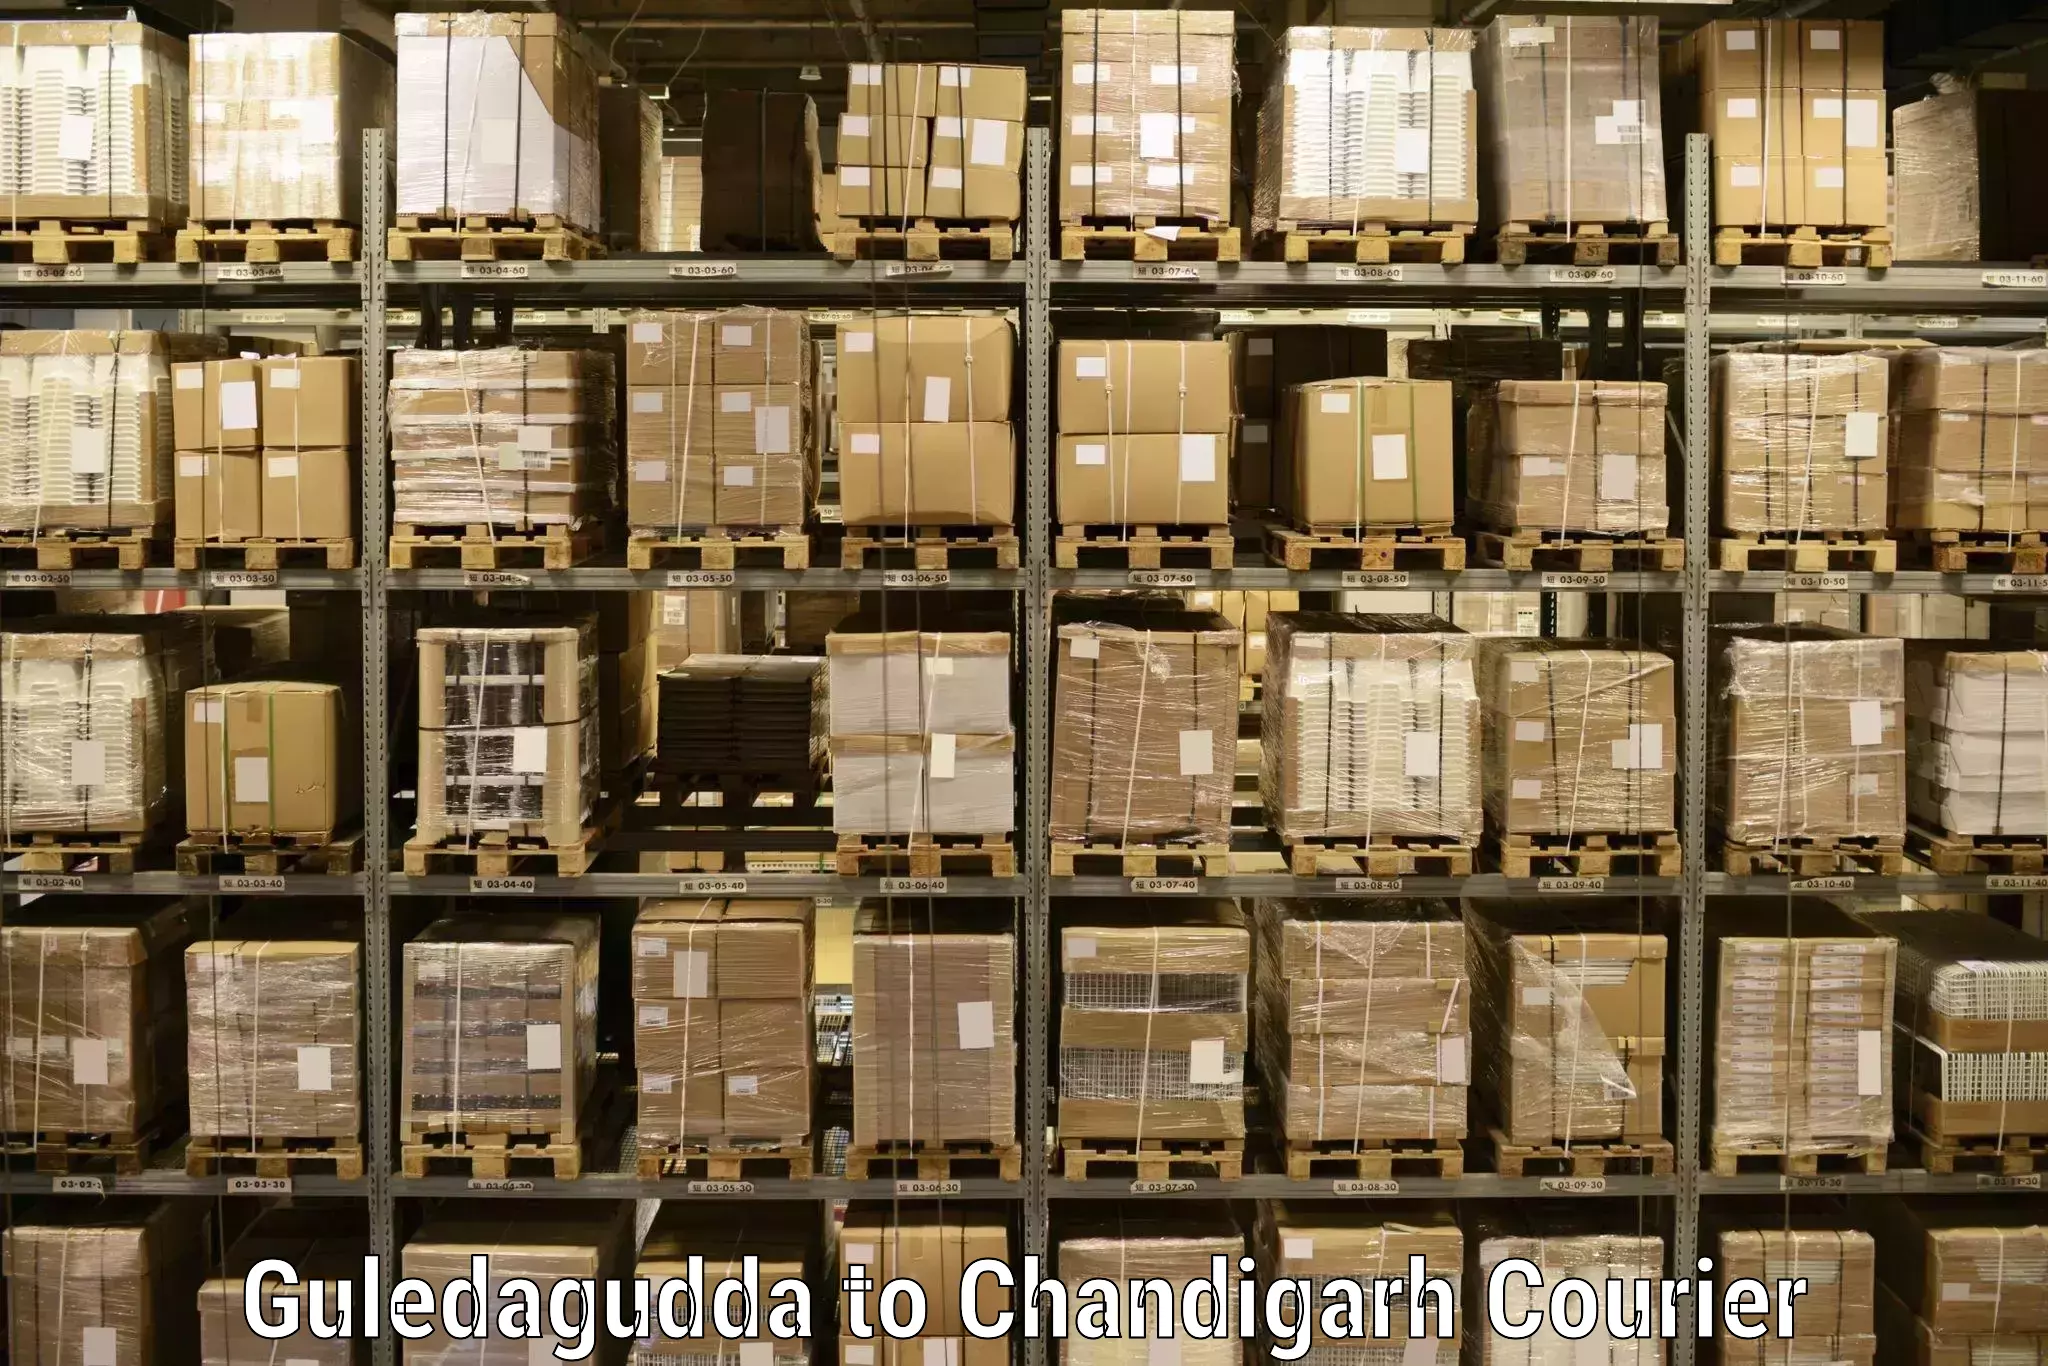 Comprehensive shipping services Guledagudda to Chandigarh